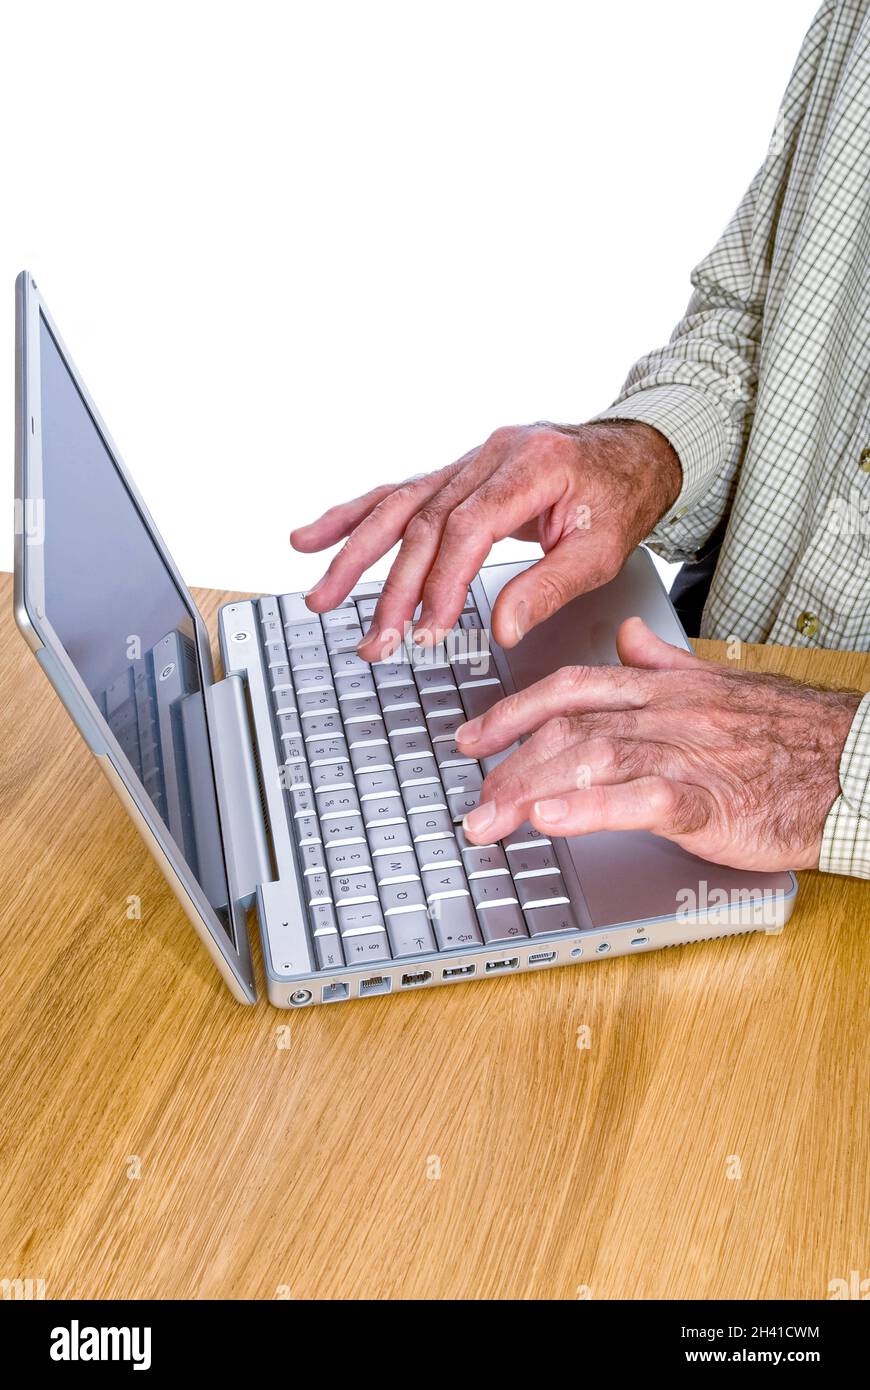 Retrato vertical de un caballero de edad avanzada navegando por Internet en su ordenador portátil sobre un fondo blanco. Foto de stock